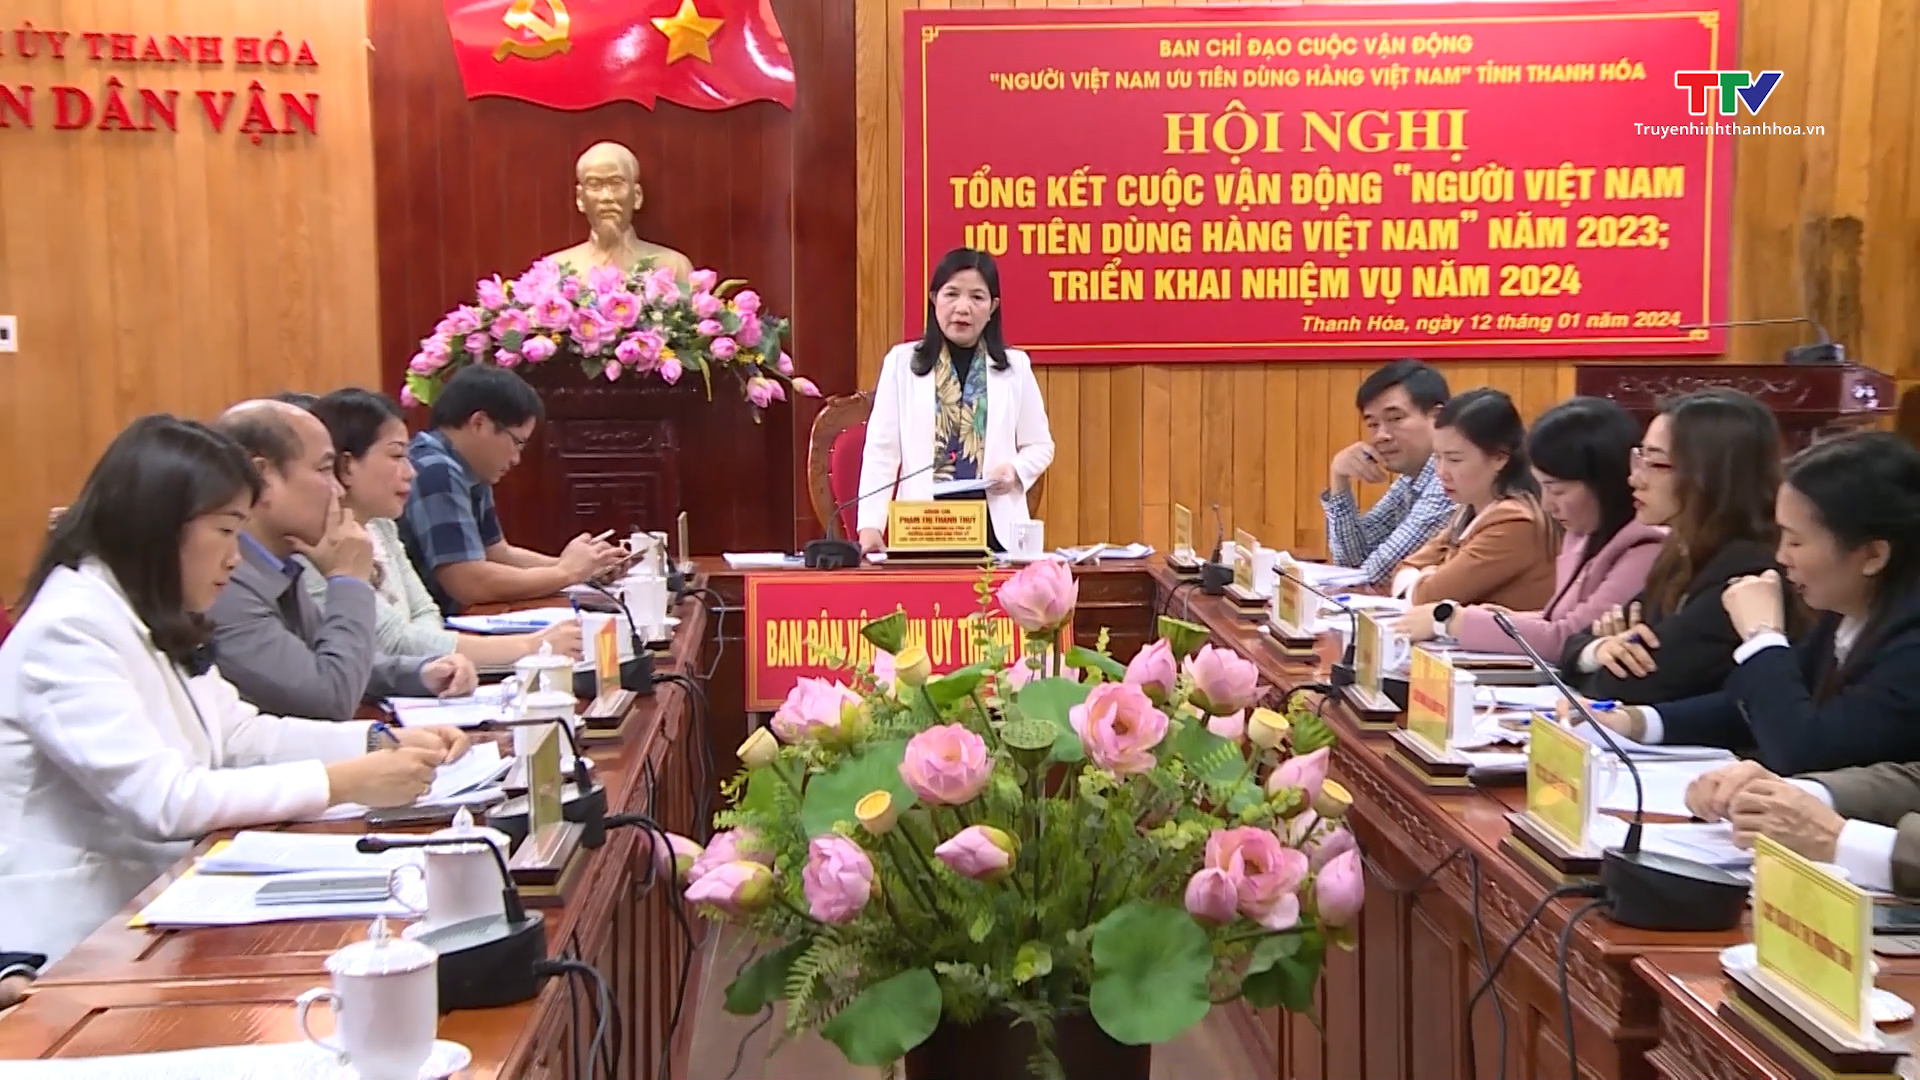 Tổng kết Cuộc vận động "Người Việt Nam ưu tiên dùng hàng Việt Nam" năm 2023, triển khai nhiệm vụ năm 2024- Ảnh 1.